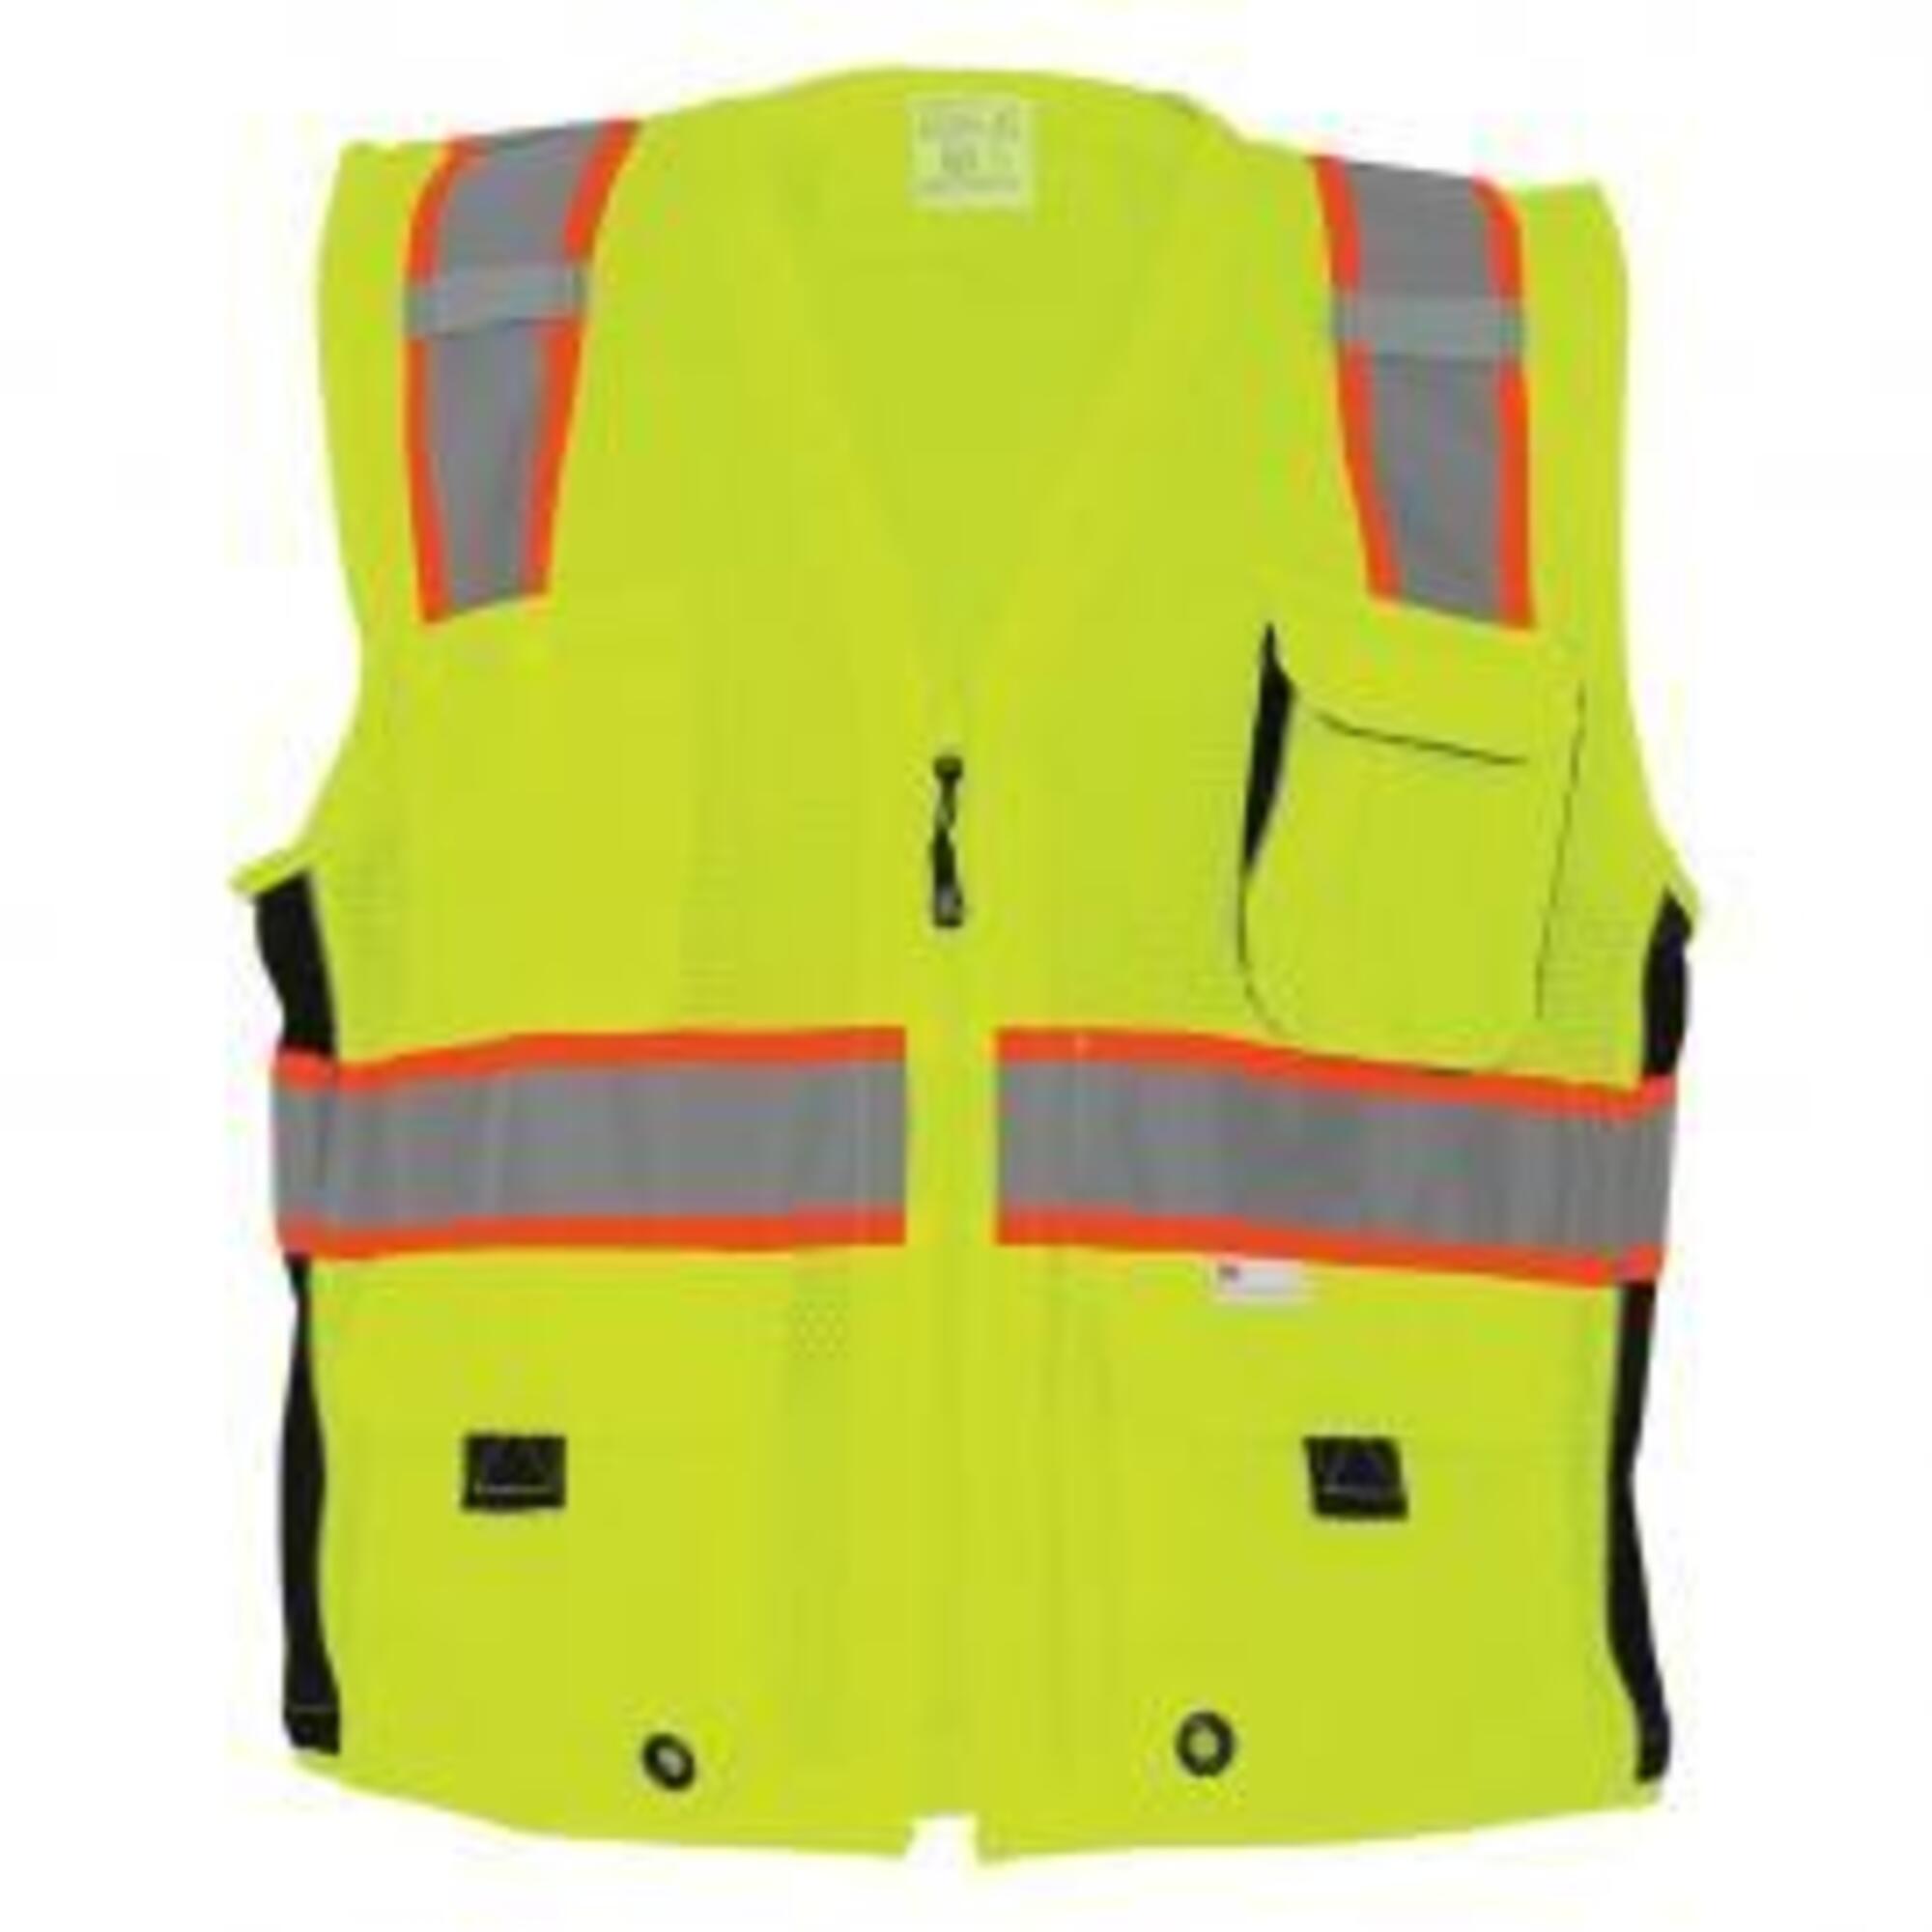 FrogWear Surveyors Safety Vest, M, Yellow/Green, Model GLO-079-M